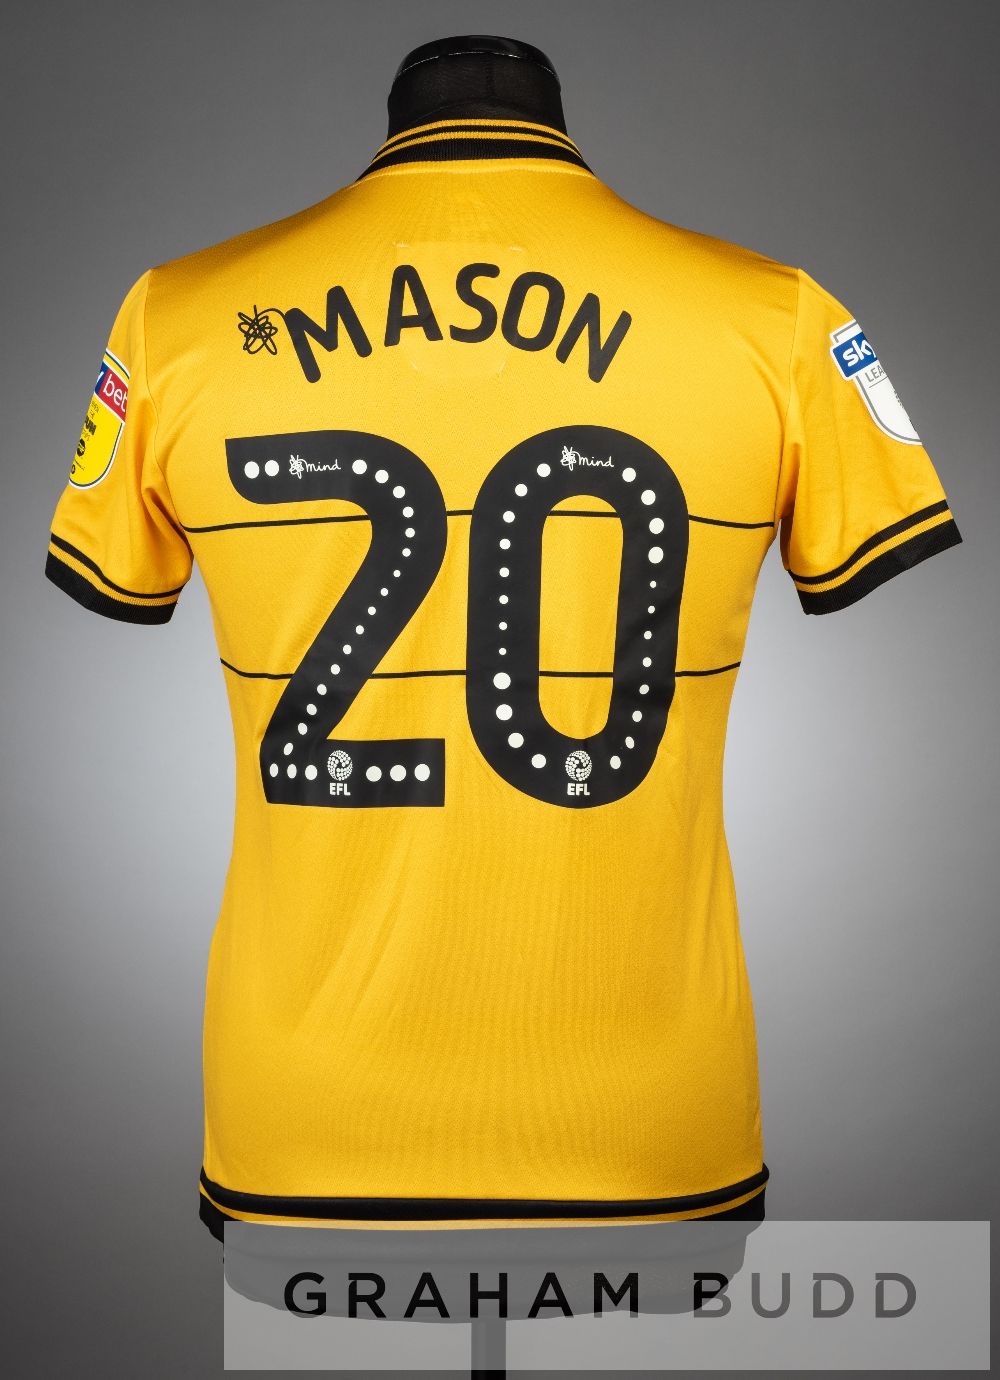 Two Joe Mason yellow and black MK Dons no.20 third choice jerseys, season 2019-20, both short- - Image 4 of 4